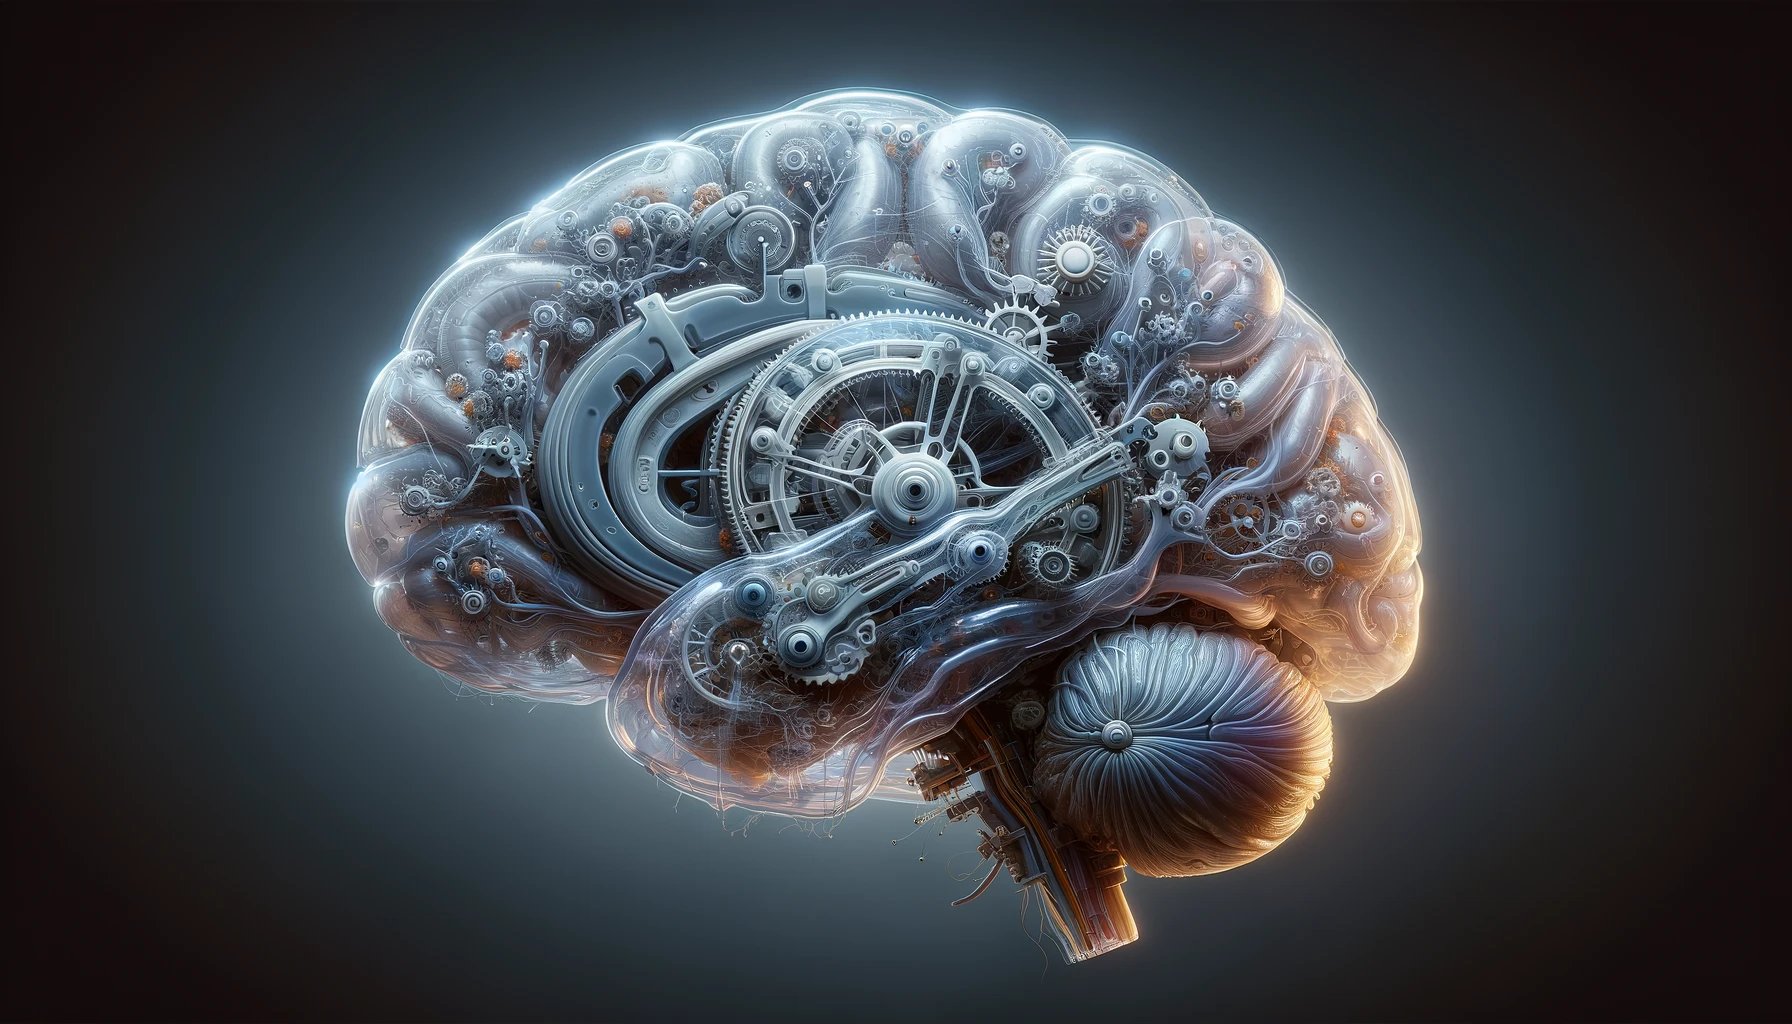 complejidad del cerebro en la esquizofrenia catatónica